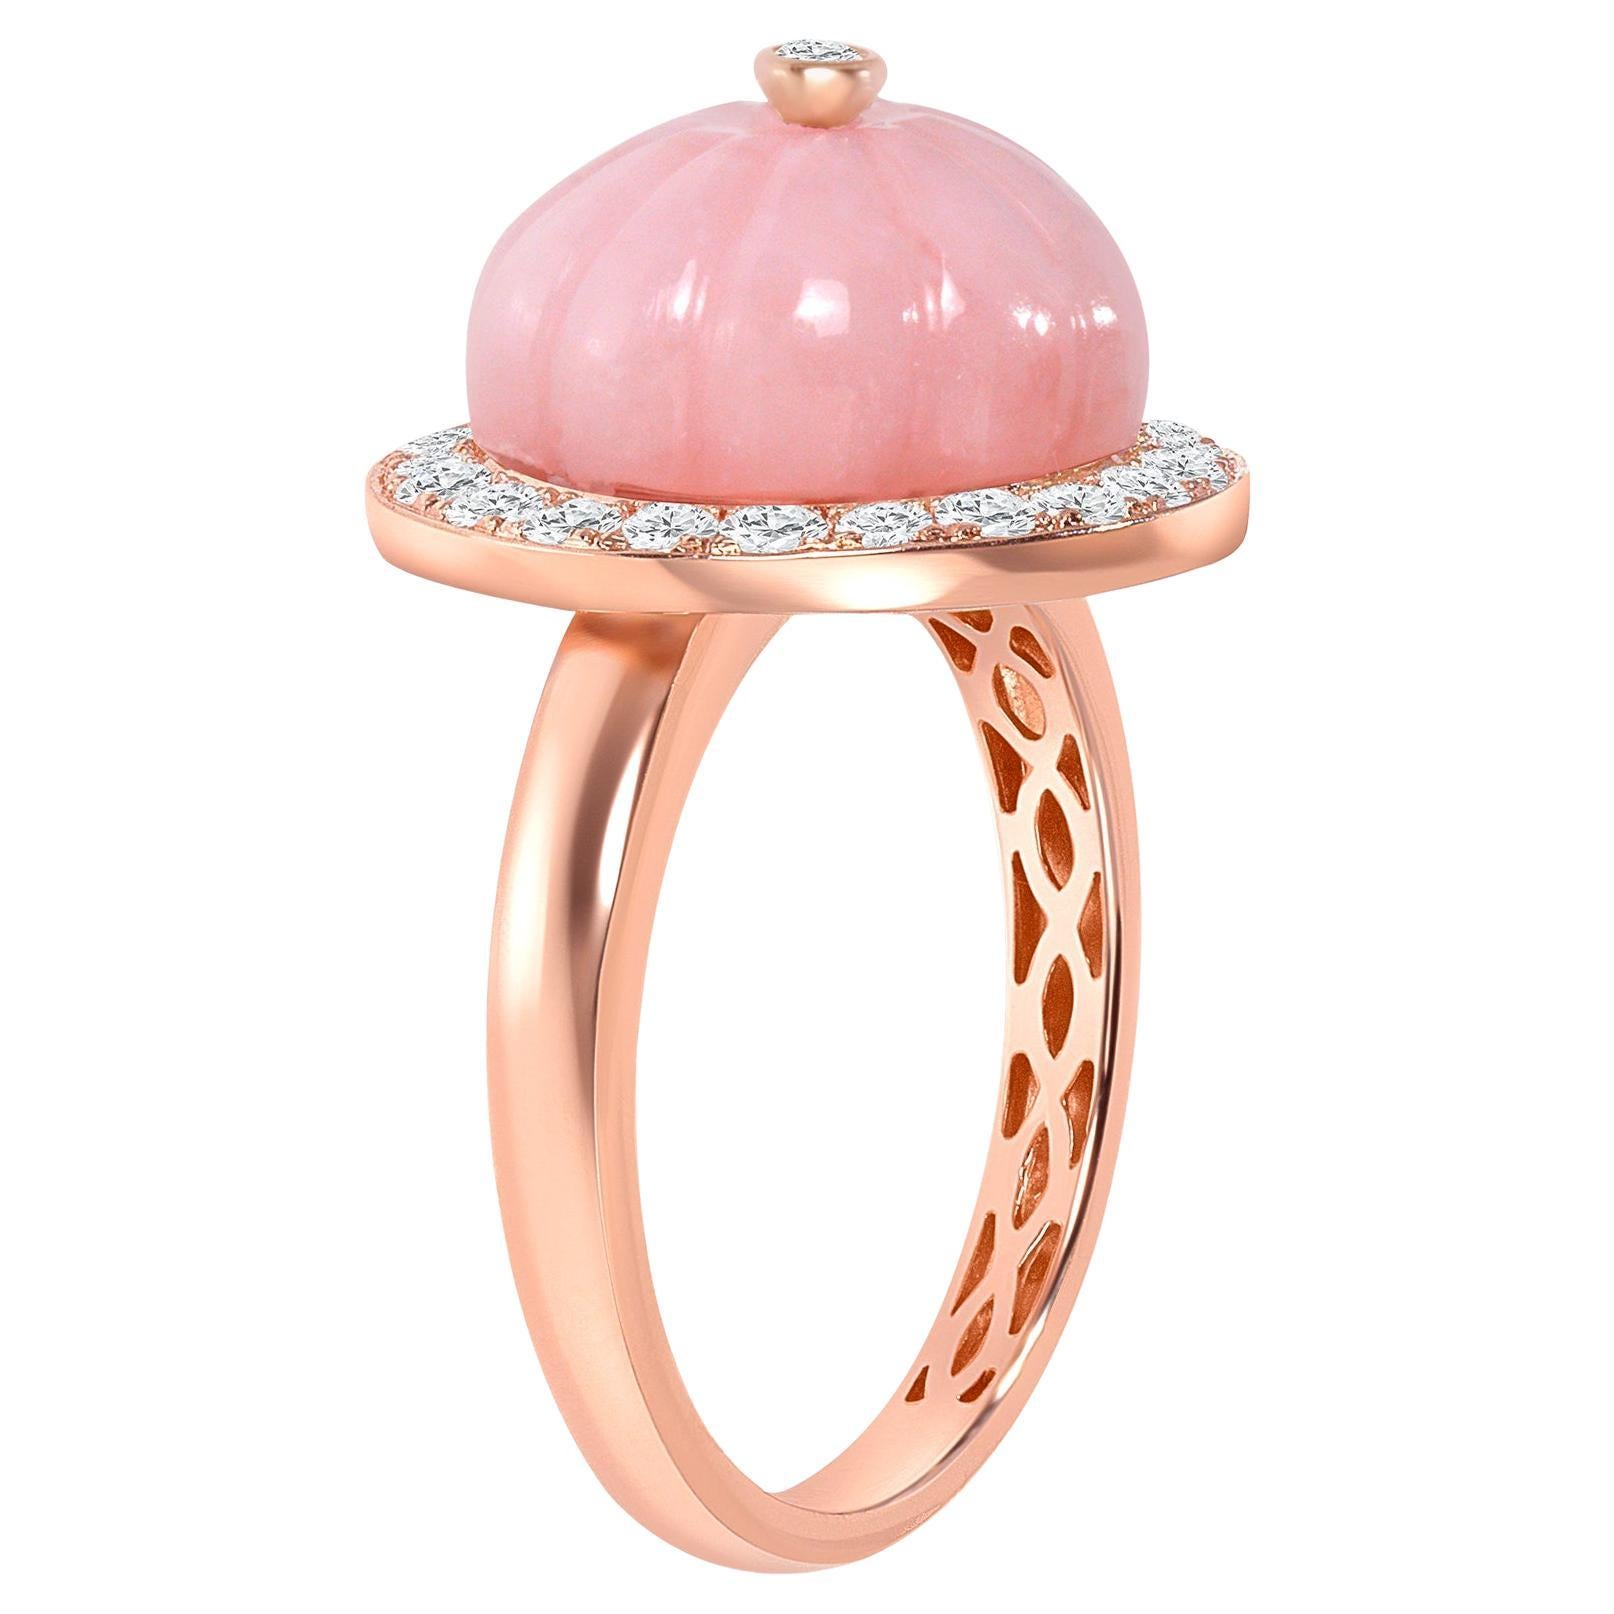 Dieser einzigartige Ring ist aus luxuriösem 14-karätigem Gold gefertigt und zeigt einen faszinierenden rosa Opal, der von schimmernden Diamanten umgeben ist. Sein exquisites Design strahlt Eleganz und Stil aus und macht ihn zur perfekten Ergänzung